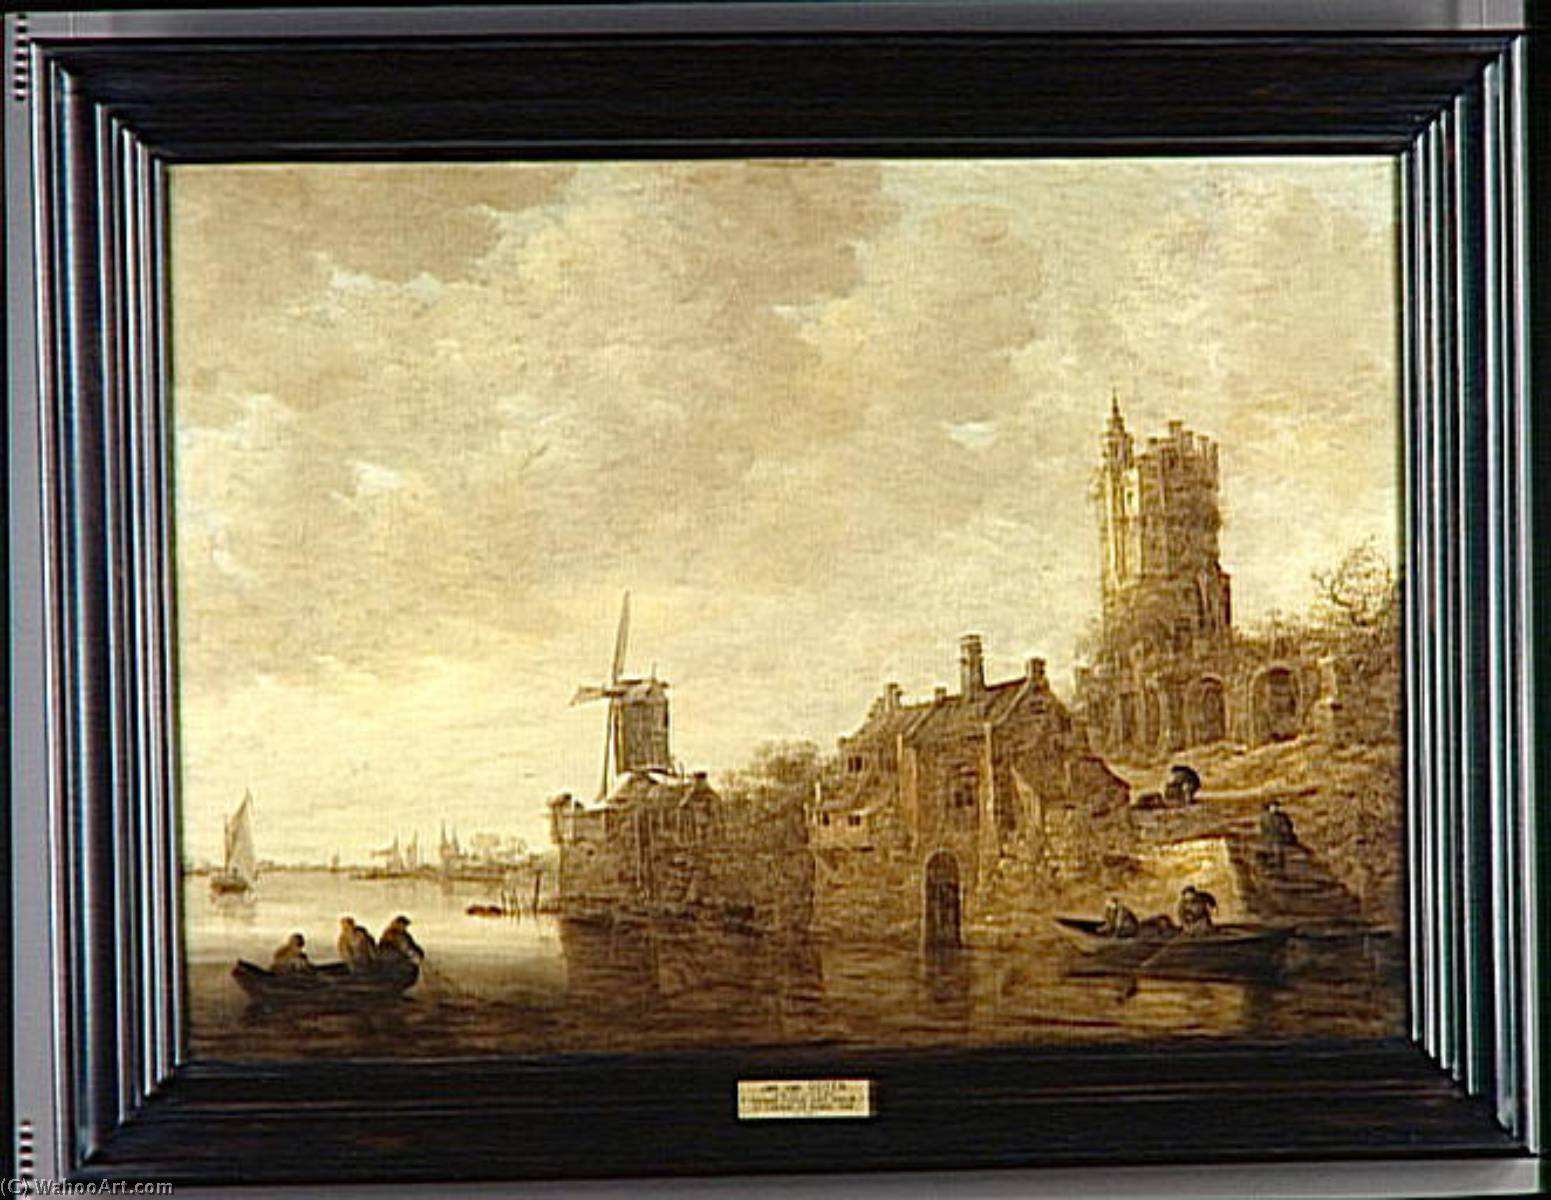 WikiOO.org - Encyclopedia of Fine Arts - Målning, konstverk Jan Van Goyen - PAYSAGE FLUVIAL AVEC MOULIN ET CHATEAU EN RUINES